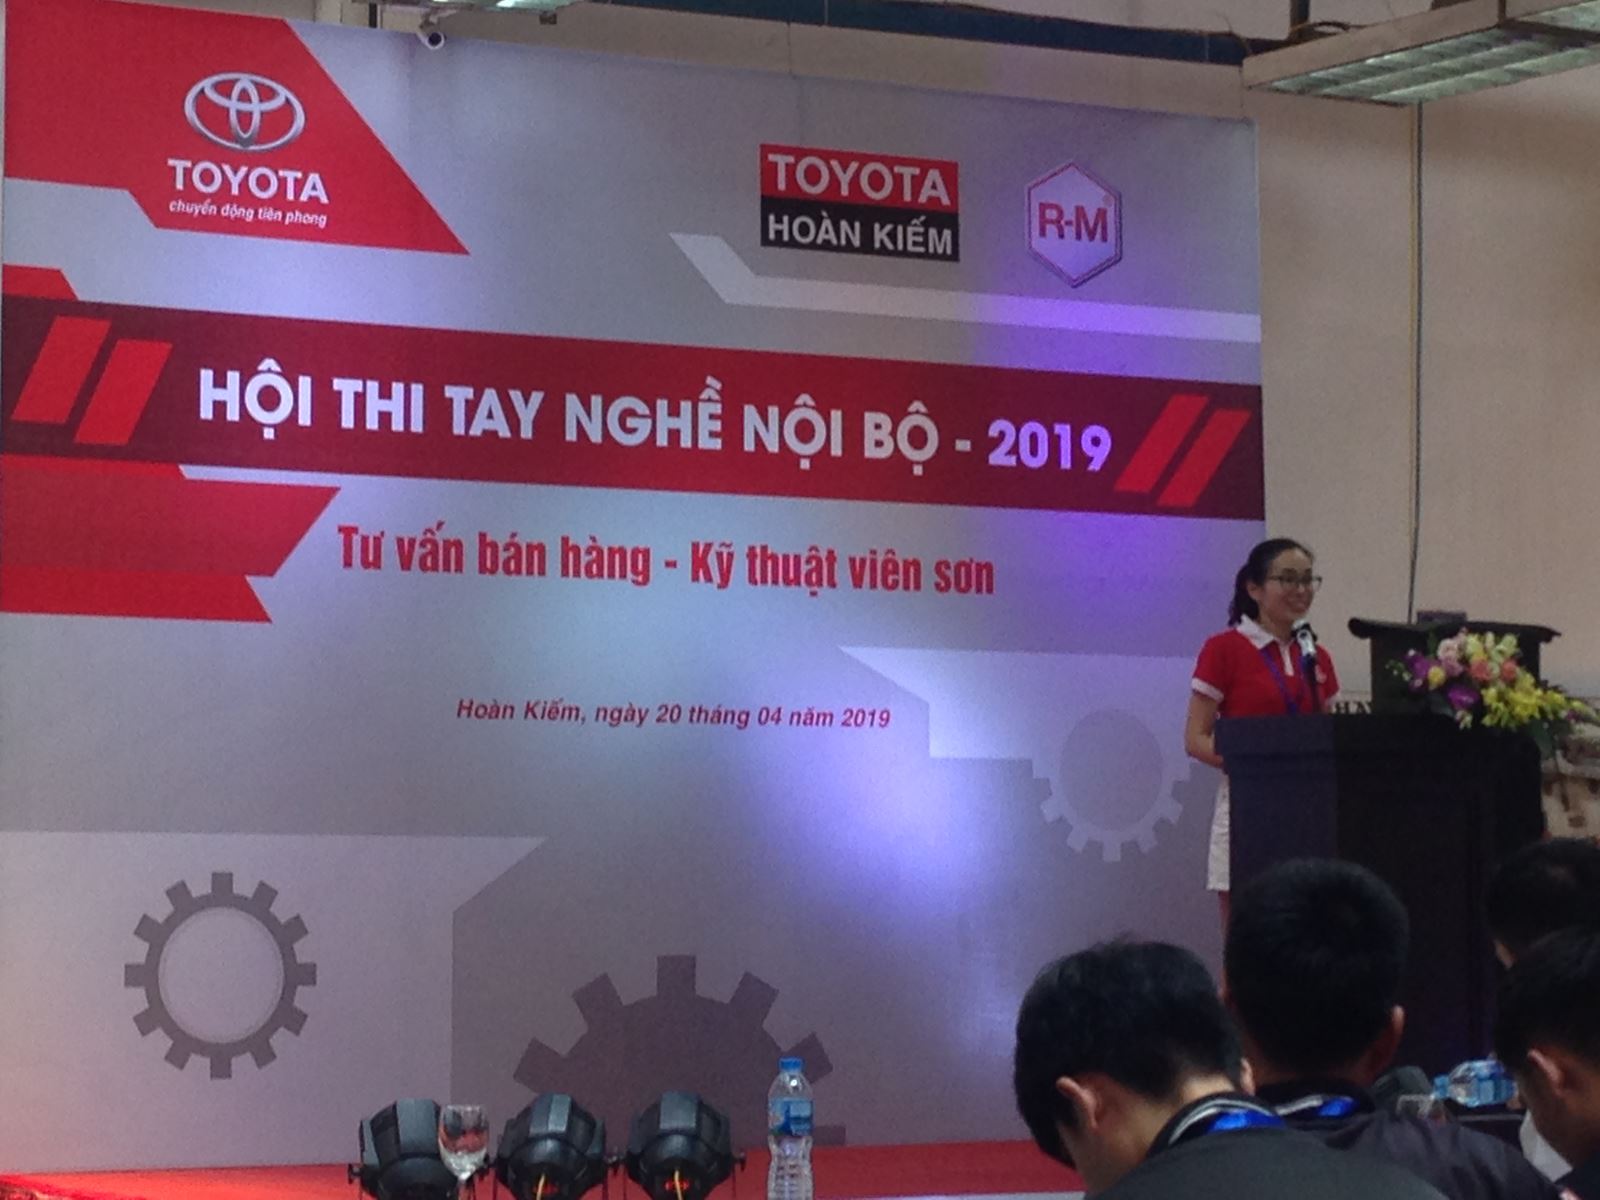 Hội thi tay nghề 2019 Toyota Hoàn Kiếm